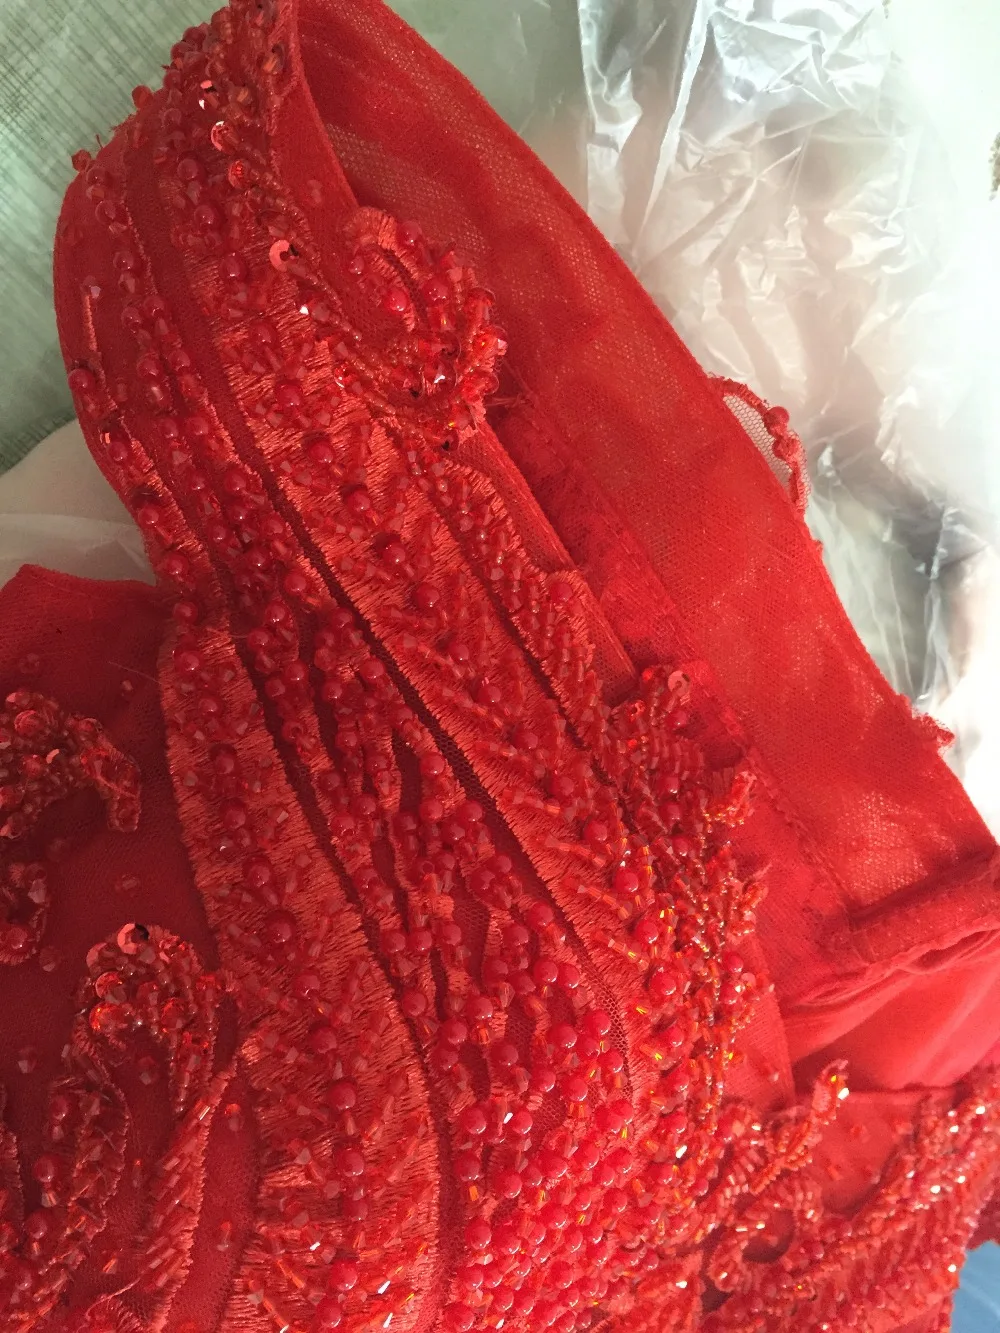 Весна Лето Высокое качество Бонд Иллюзия Топ сильно бисером красное вечернее платье атлас с открытыми плечами vestido de festa